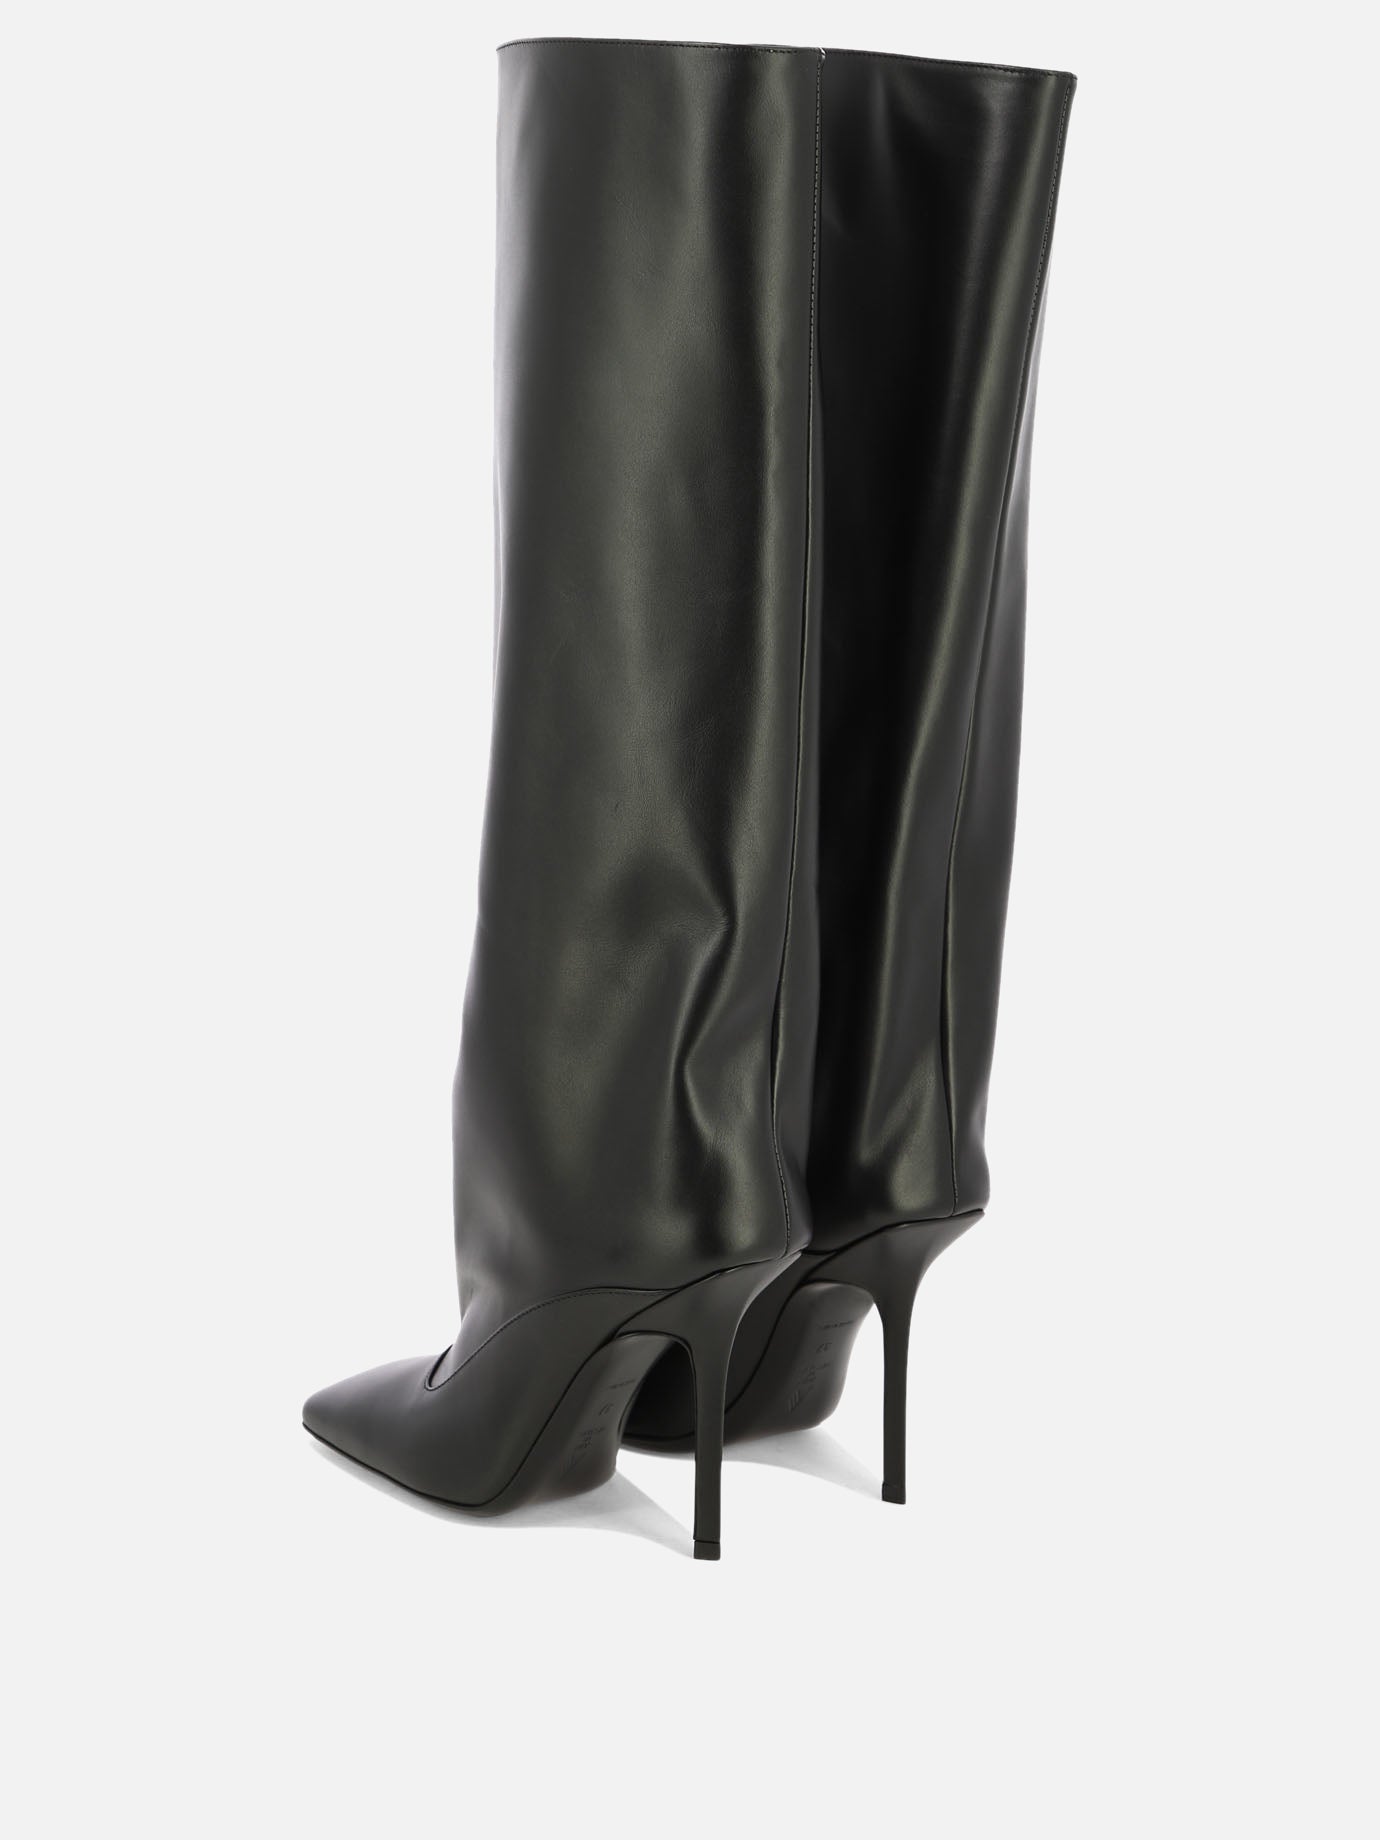 "Sienna" boots